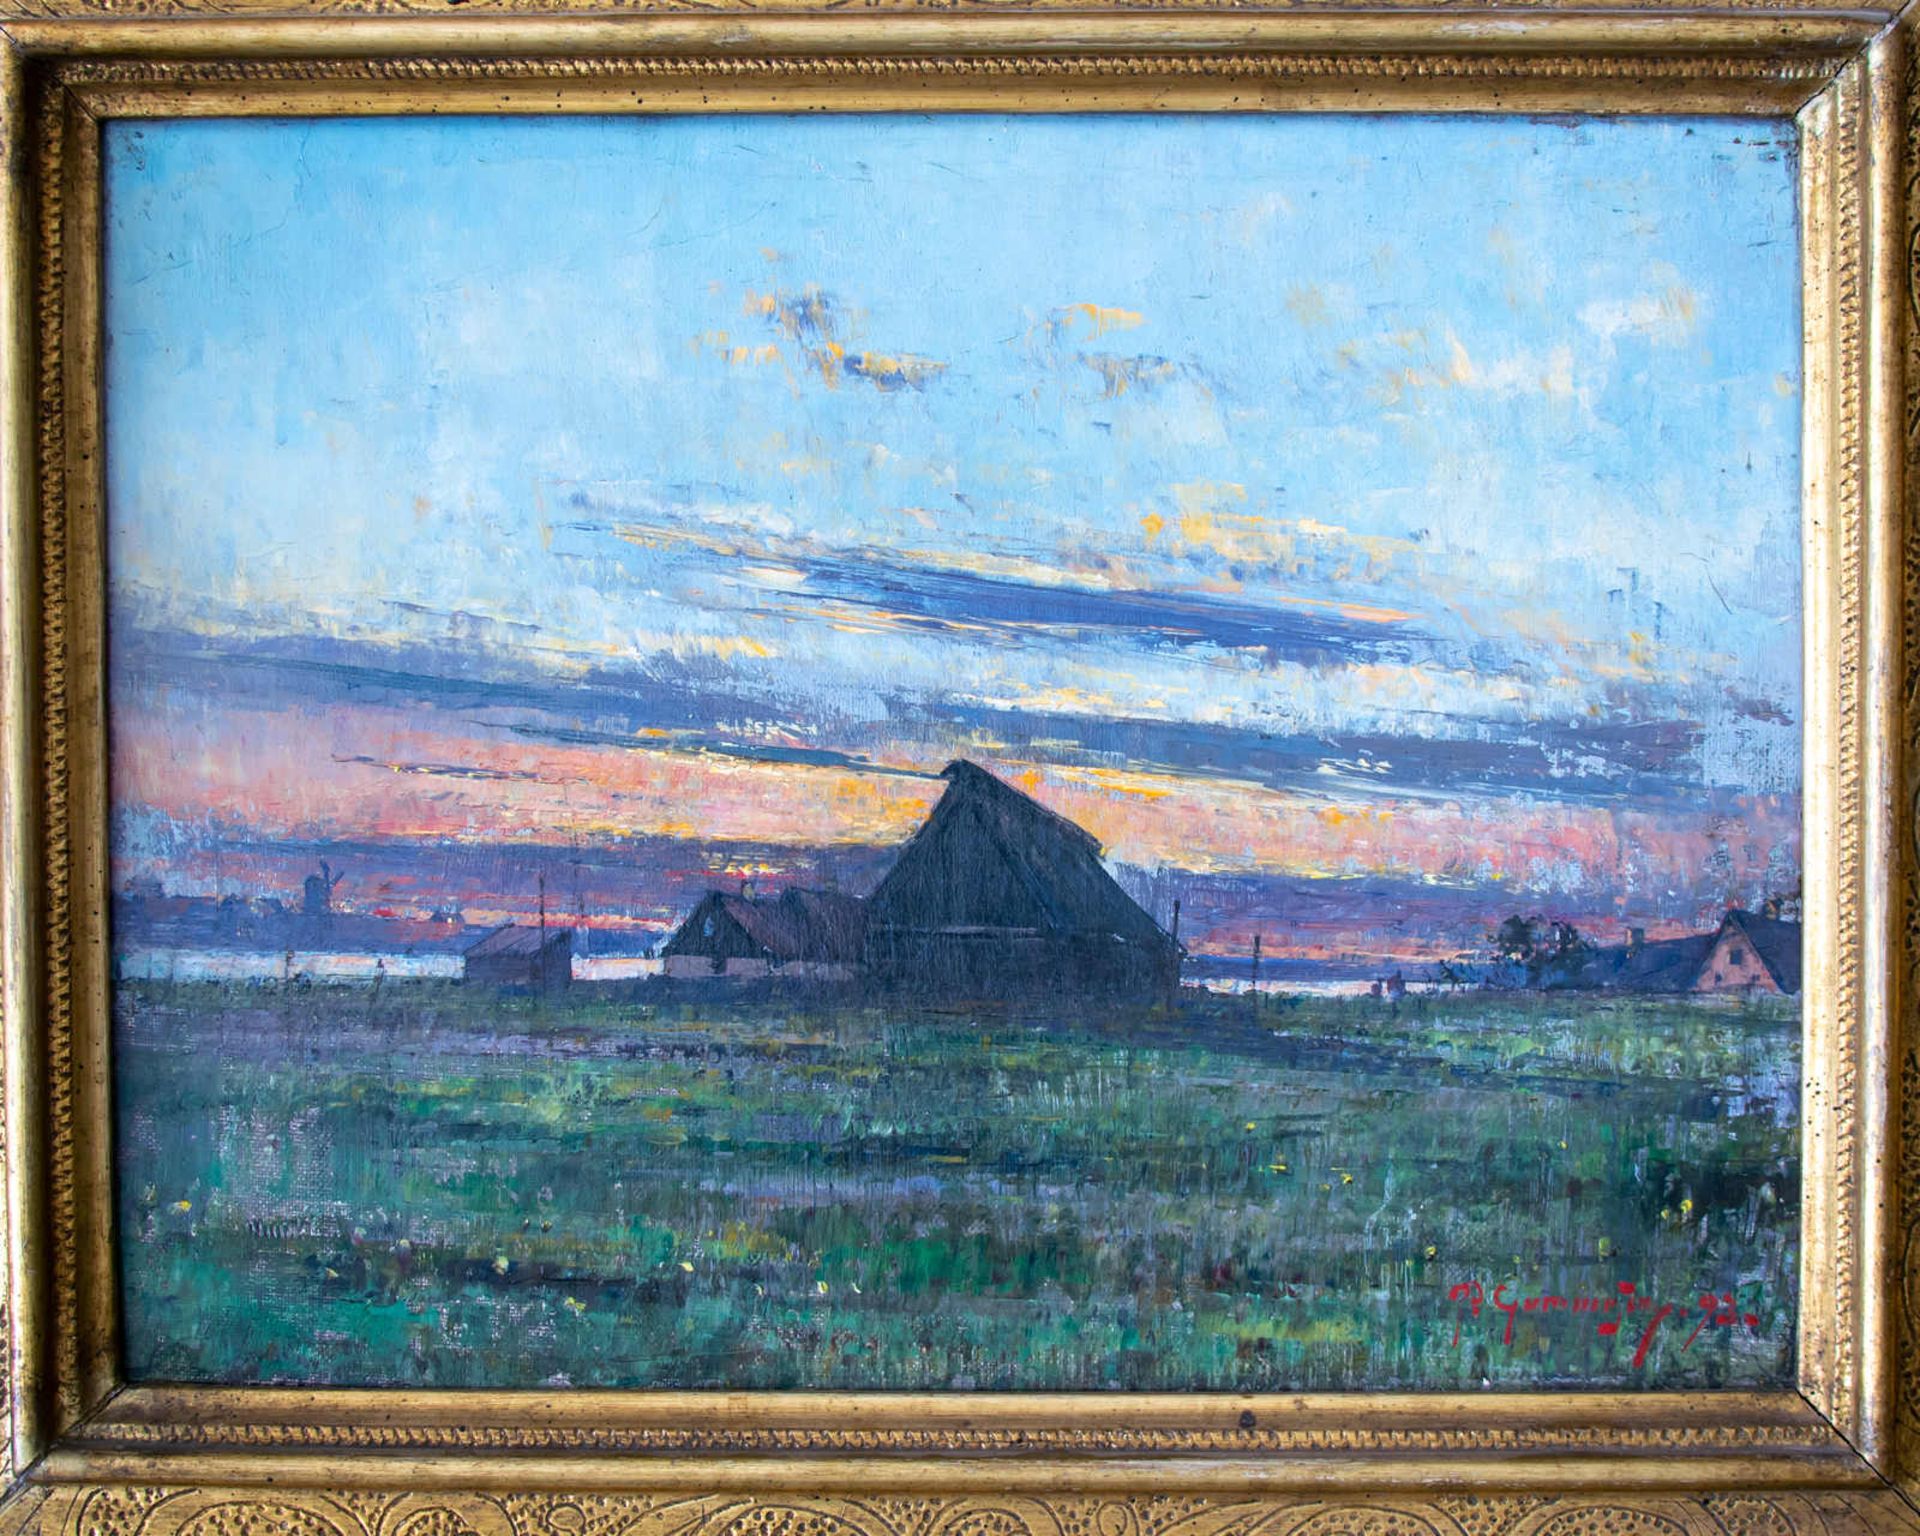 Katen am abendlichen Ufer. Per Gummesson (25.03.1858 - 05.05.1928, Schweden). Öl auf Leinwand, unten